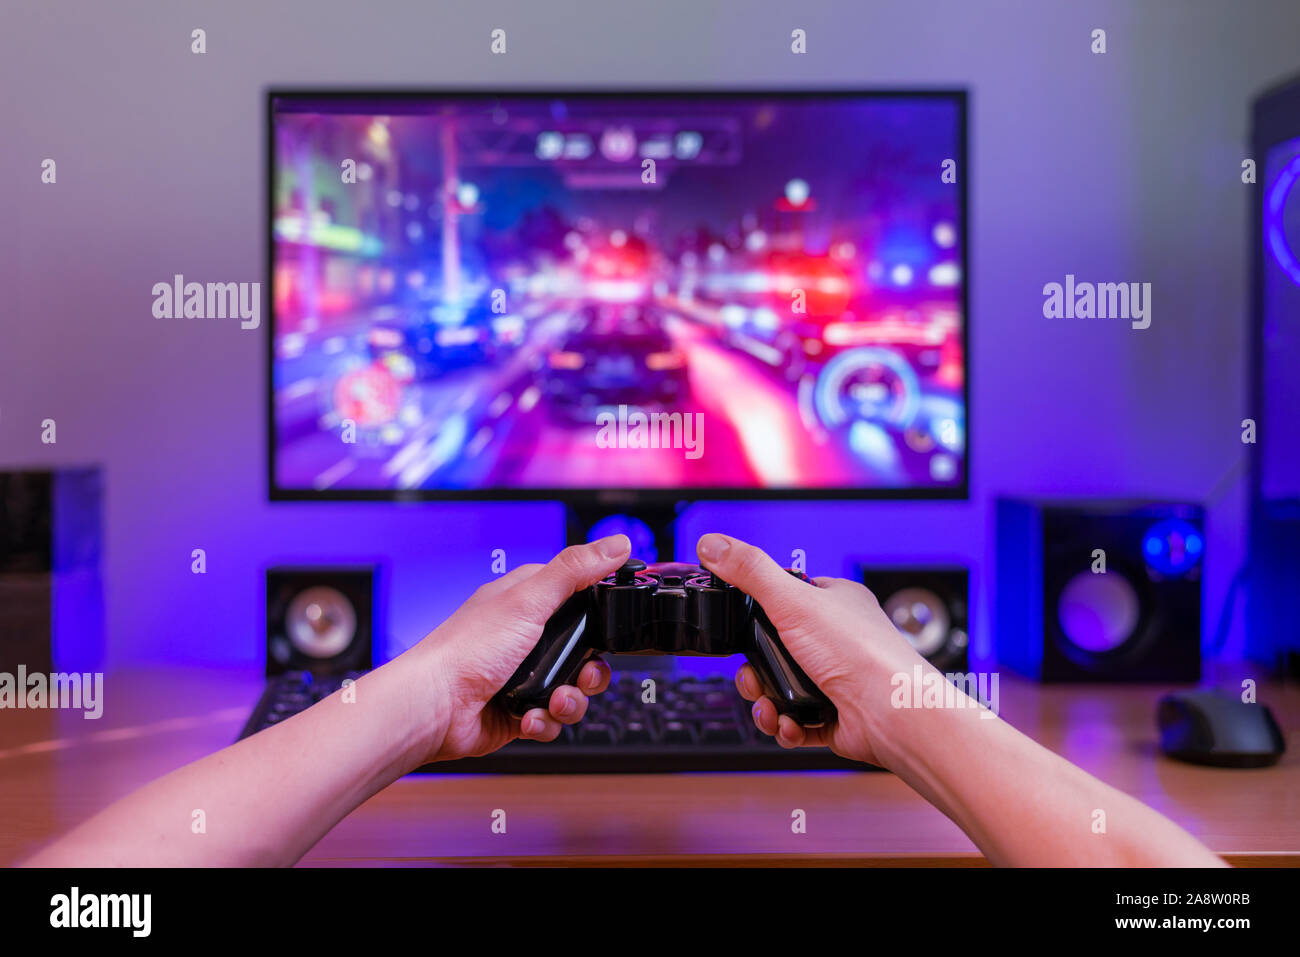 El Joypad en manos. Concepto de juegos de ordenador. Ordenador con pantalla de juego en segundo plano. Luz RGB detrás del mostrador. Foto de stock